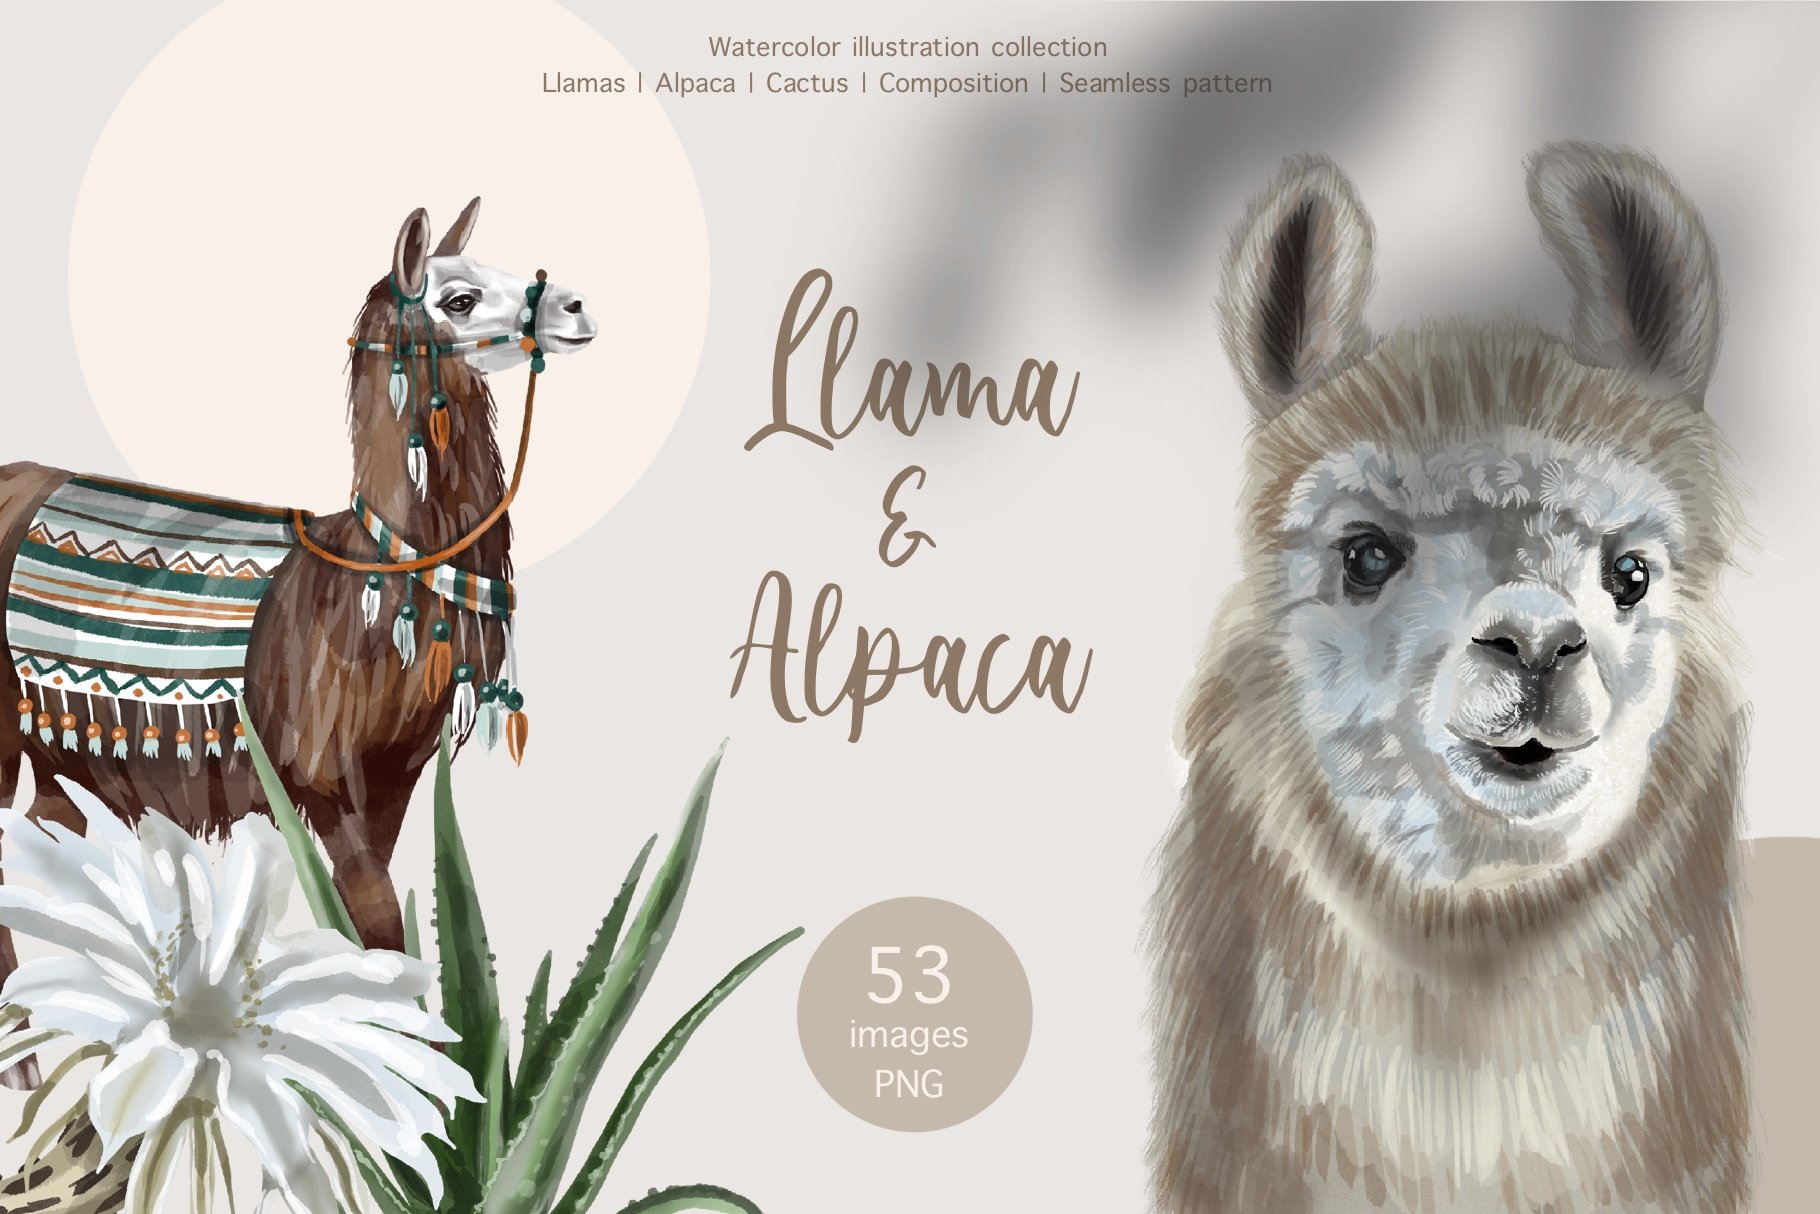 Watercolor LLama & Alpaca cover image.